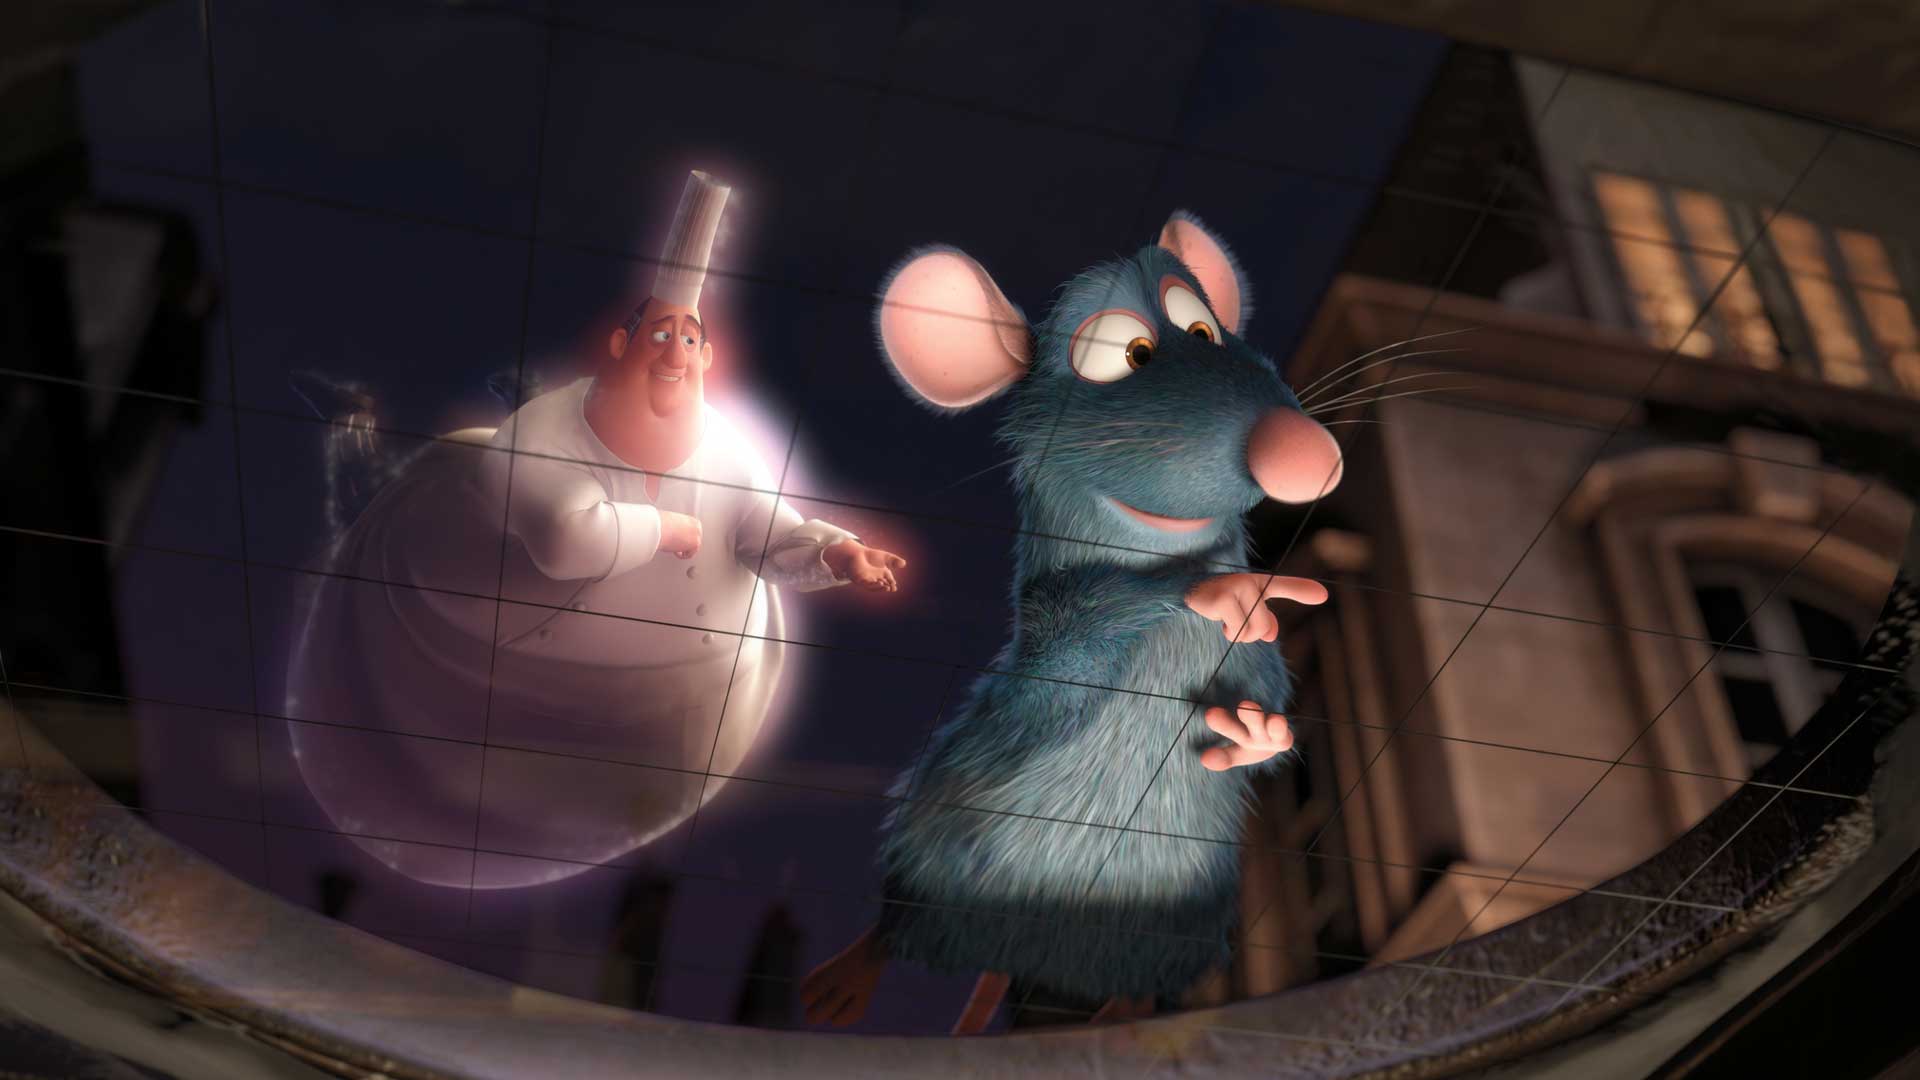 سرآشپز بزرگ و موش بامزه در انیمیشن Ratatouille، اثر استودیو پیکسار